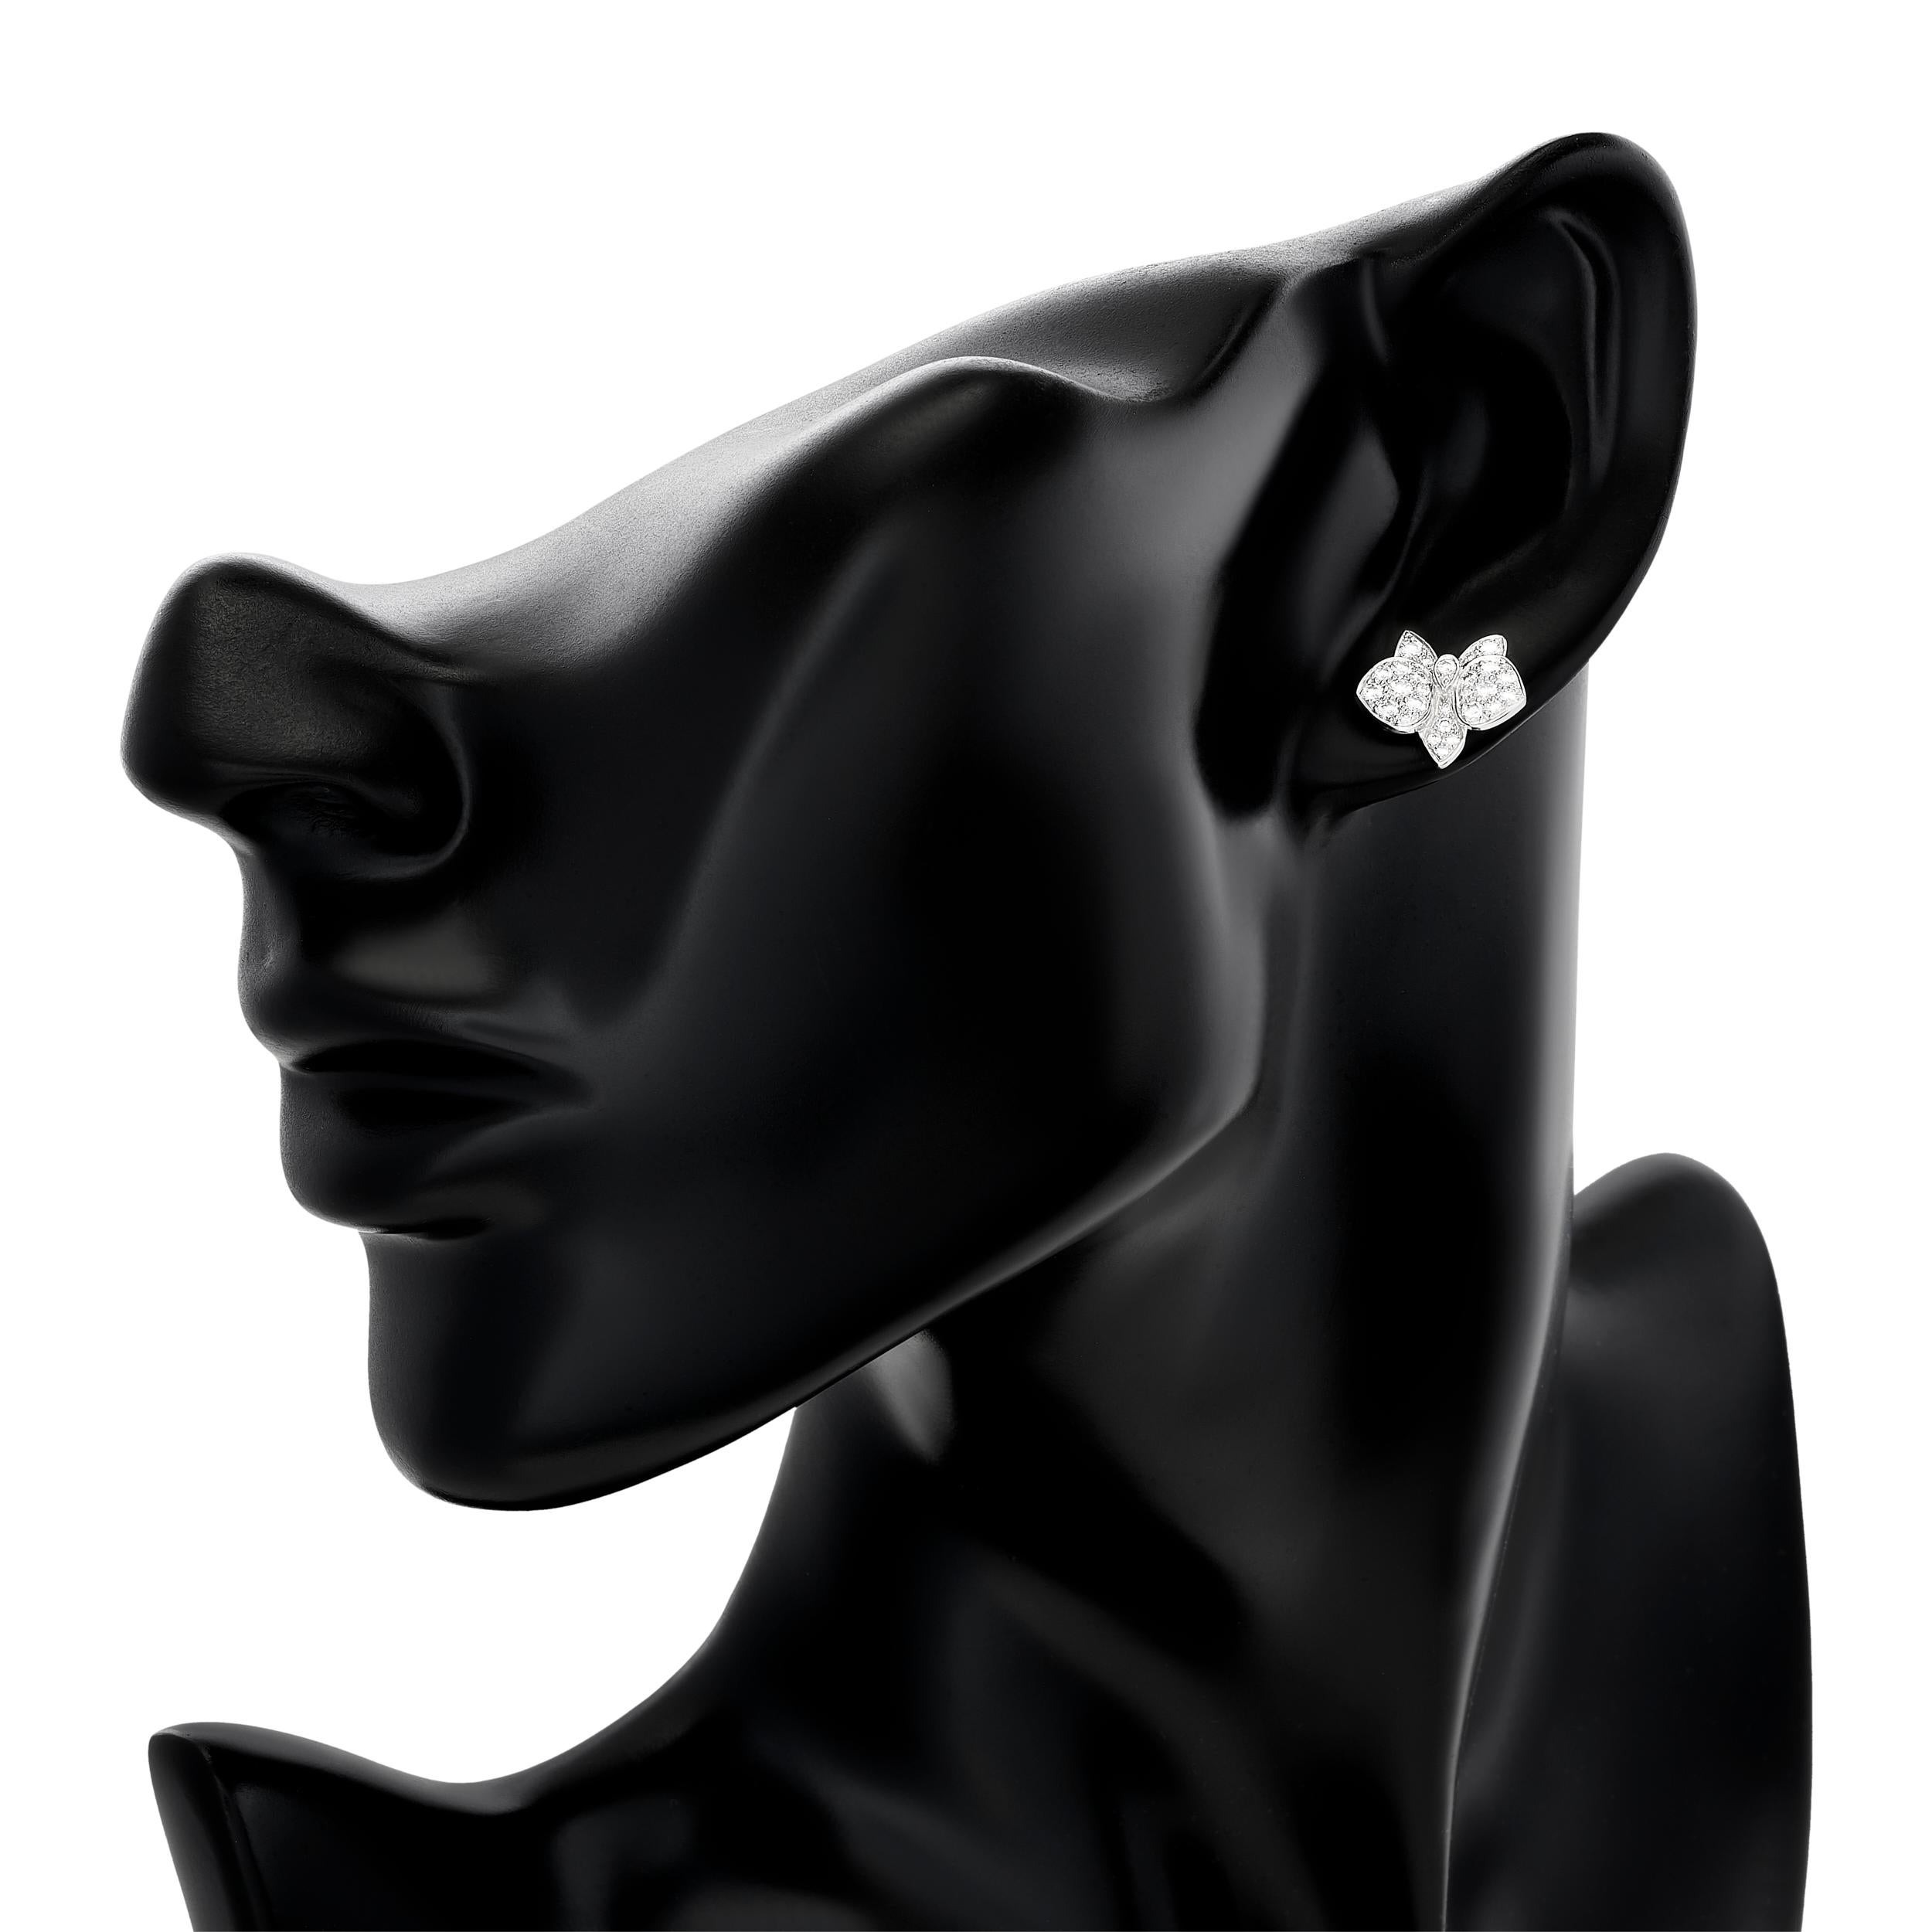 Strahlende Blüten der Eleganz: Die exquisiten Blumen-Diamant-Ohrstecker von Cartier.

Dieses Paar Cartier-Ohrringe besteht aus Blütenblättern mit insgesamt 54 runden Diamanten im Brillantschliff mit einem Gewicht von etwa 1,24 Karat. Die Diamanten